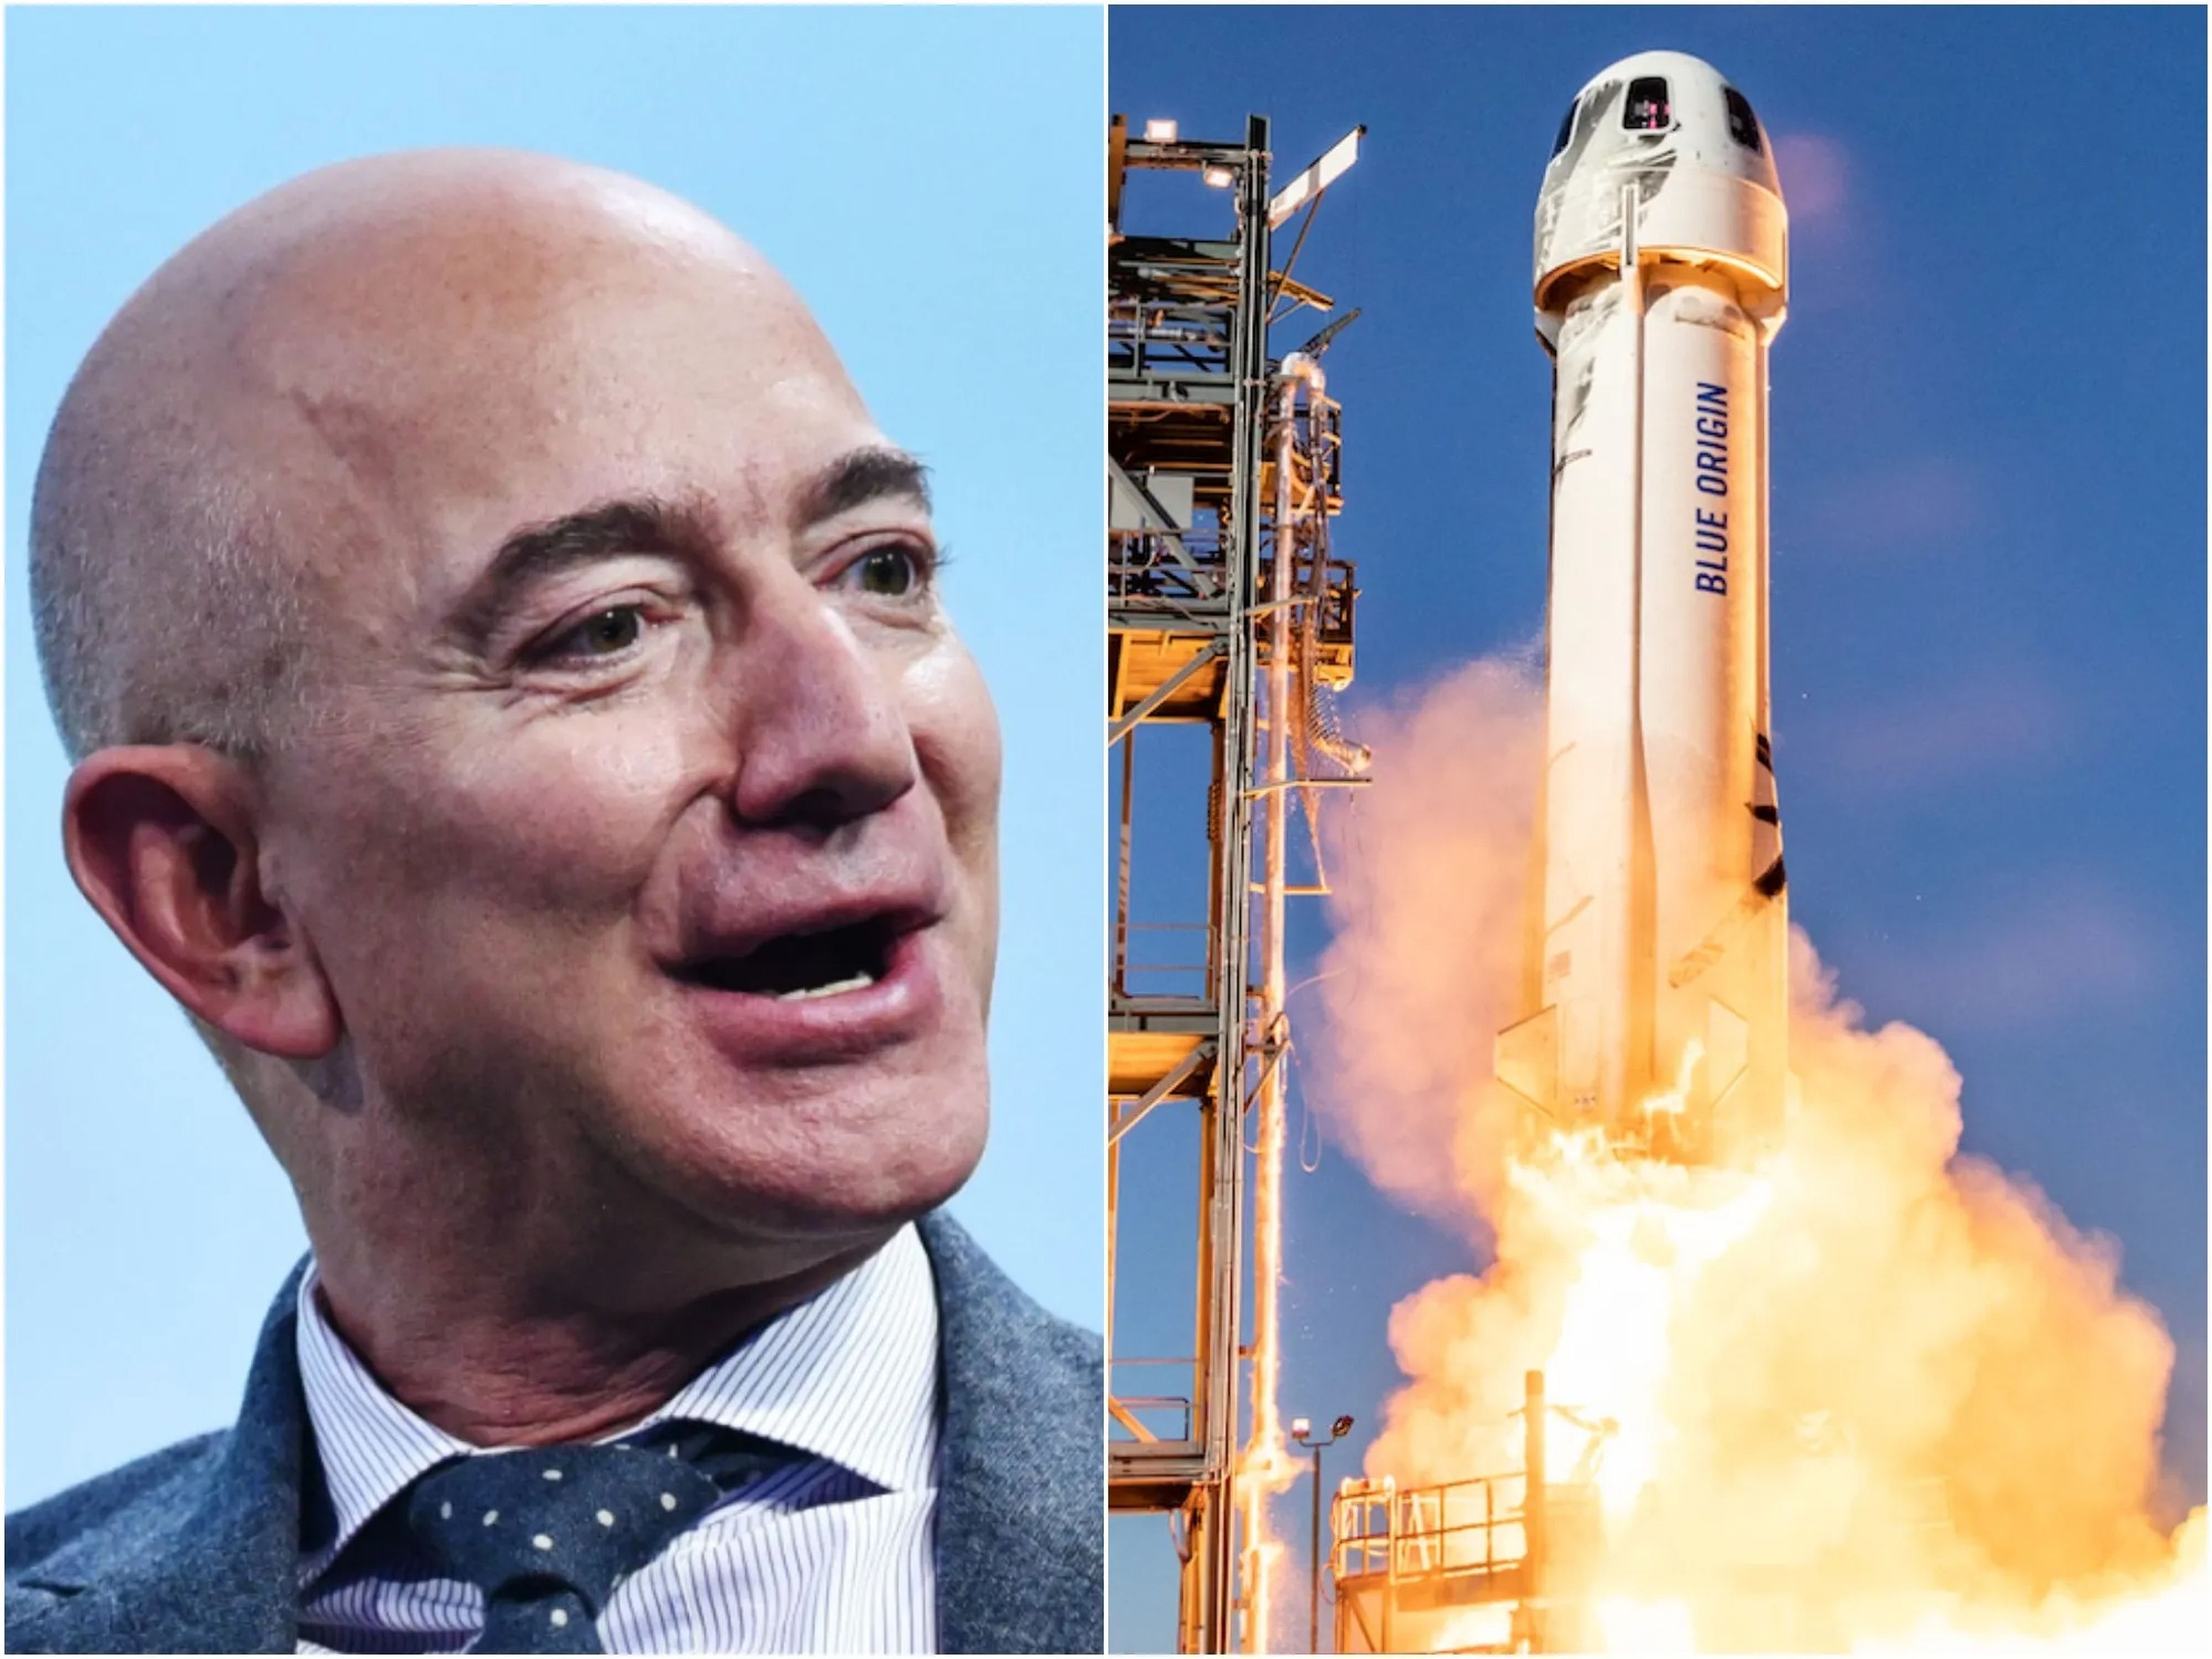 Jeff Bezos viajará al espacio en el cohete New Shepard el 20 de julio.